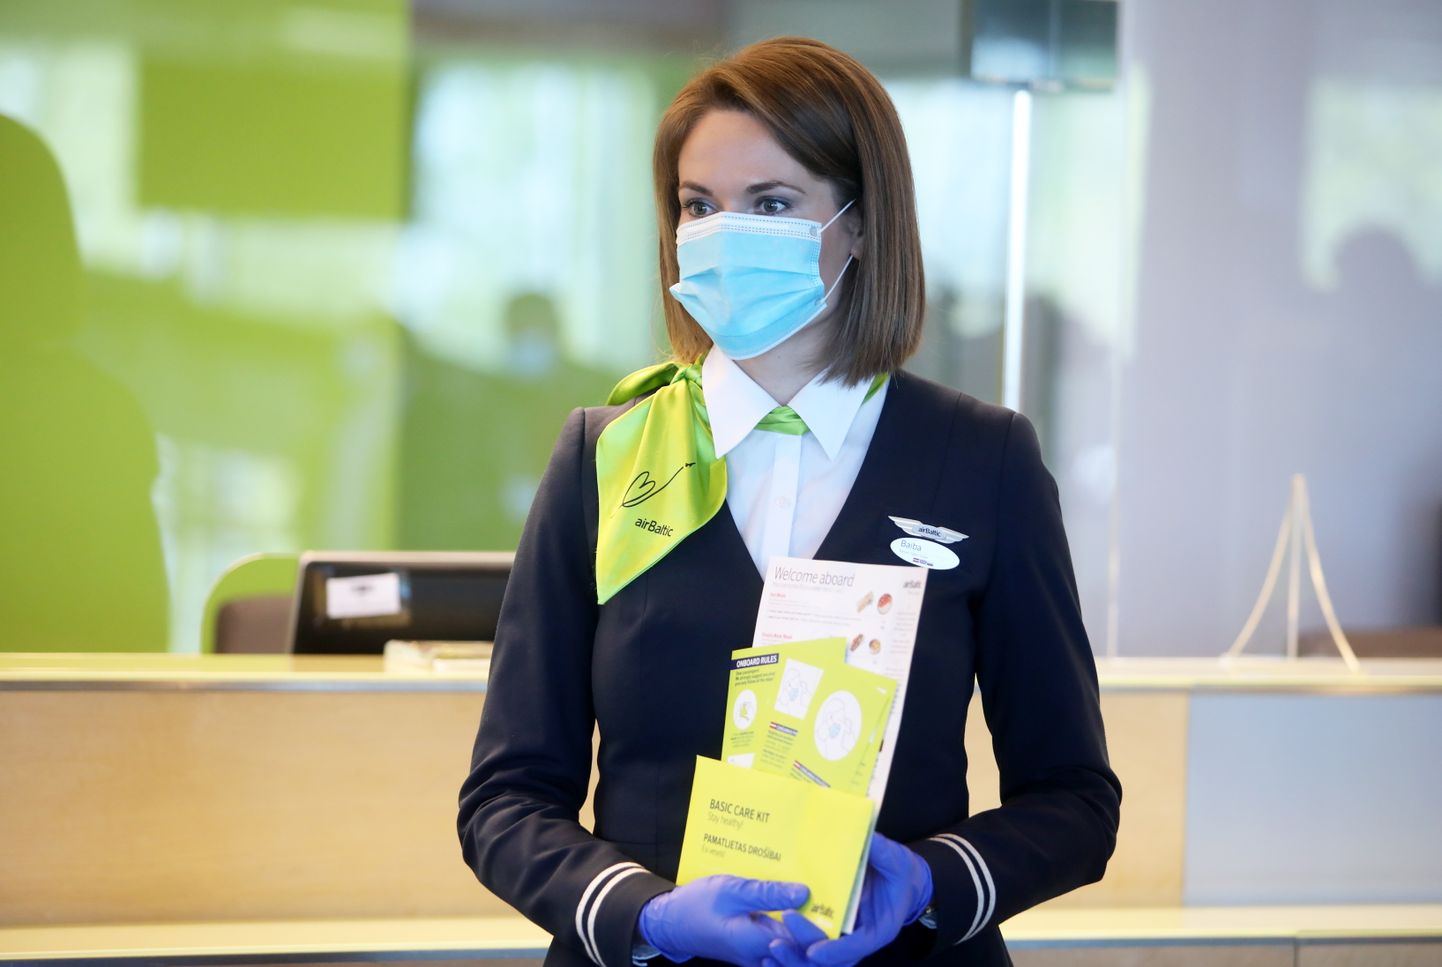 Nacionālās lidsabiedrības "airBaltic" stjuarte ar informatīviem materiāliem preses konferences laikā, kurā tiek informēts par lidojumu atsākšanu starp Baltijas valstīm, kā arī lidostā un "airBaltic" ieviestajiem epidemioloģiskās drošības pasākumiem  Covid-19 pandēmijas laikā.